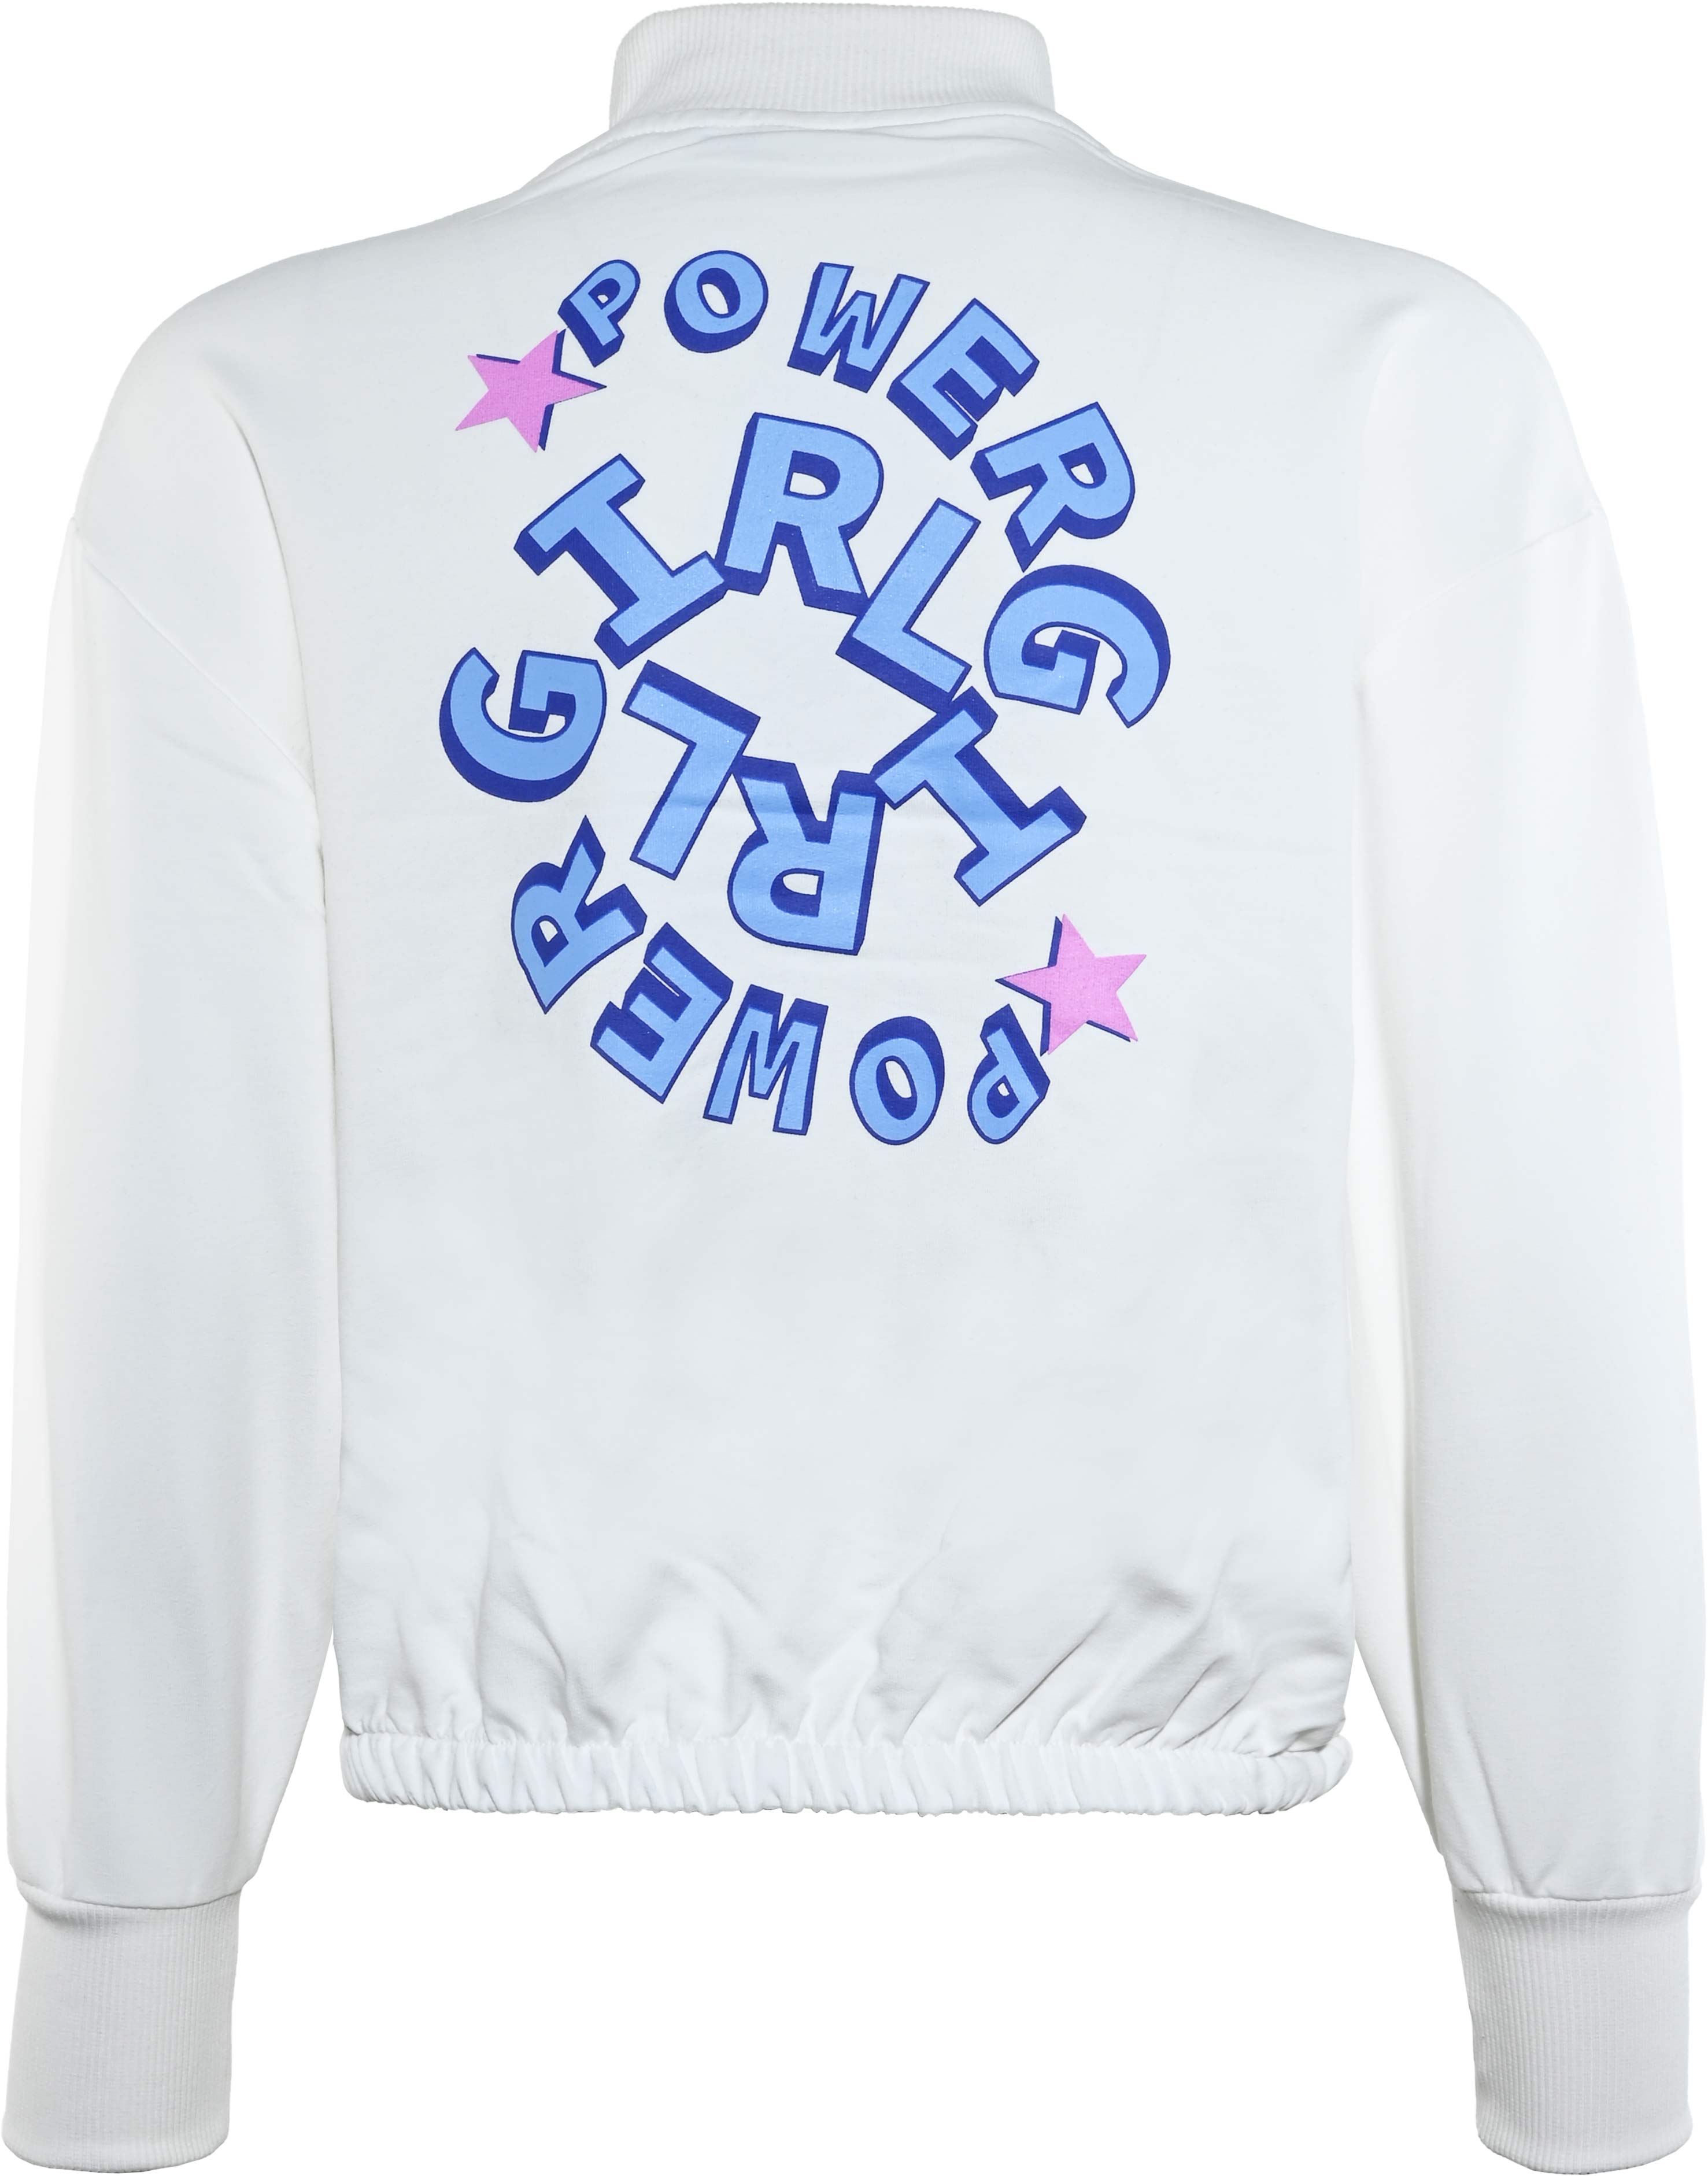 5944-Girls Sweatshirt -Power Girls